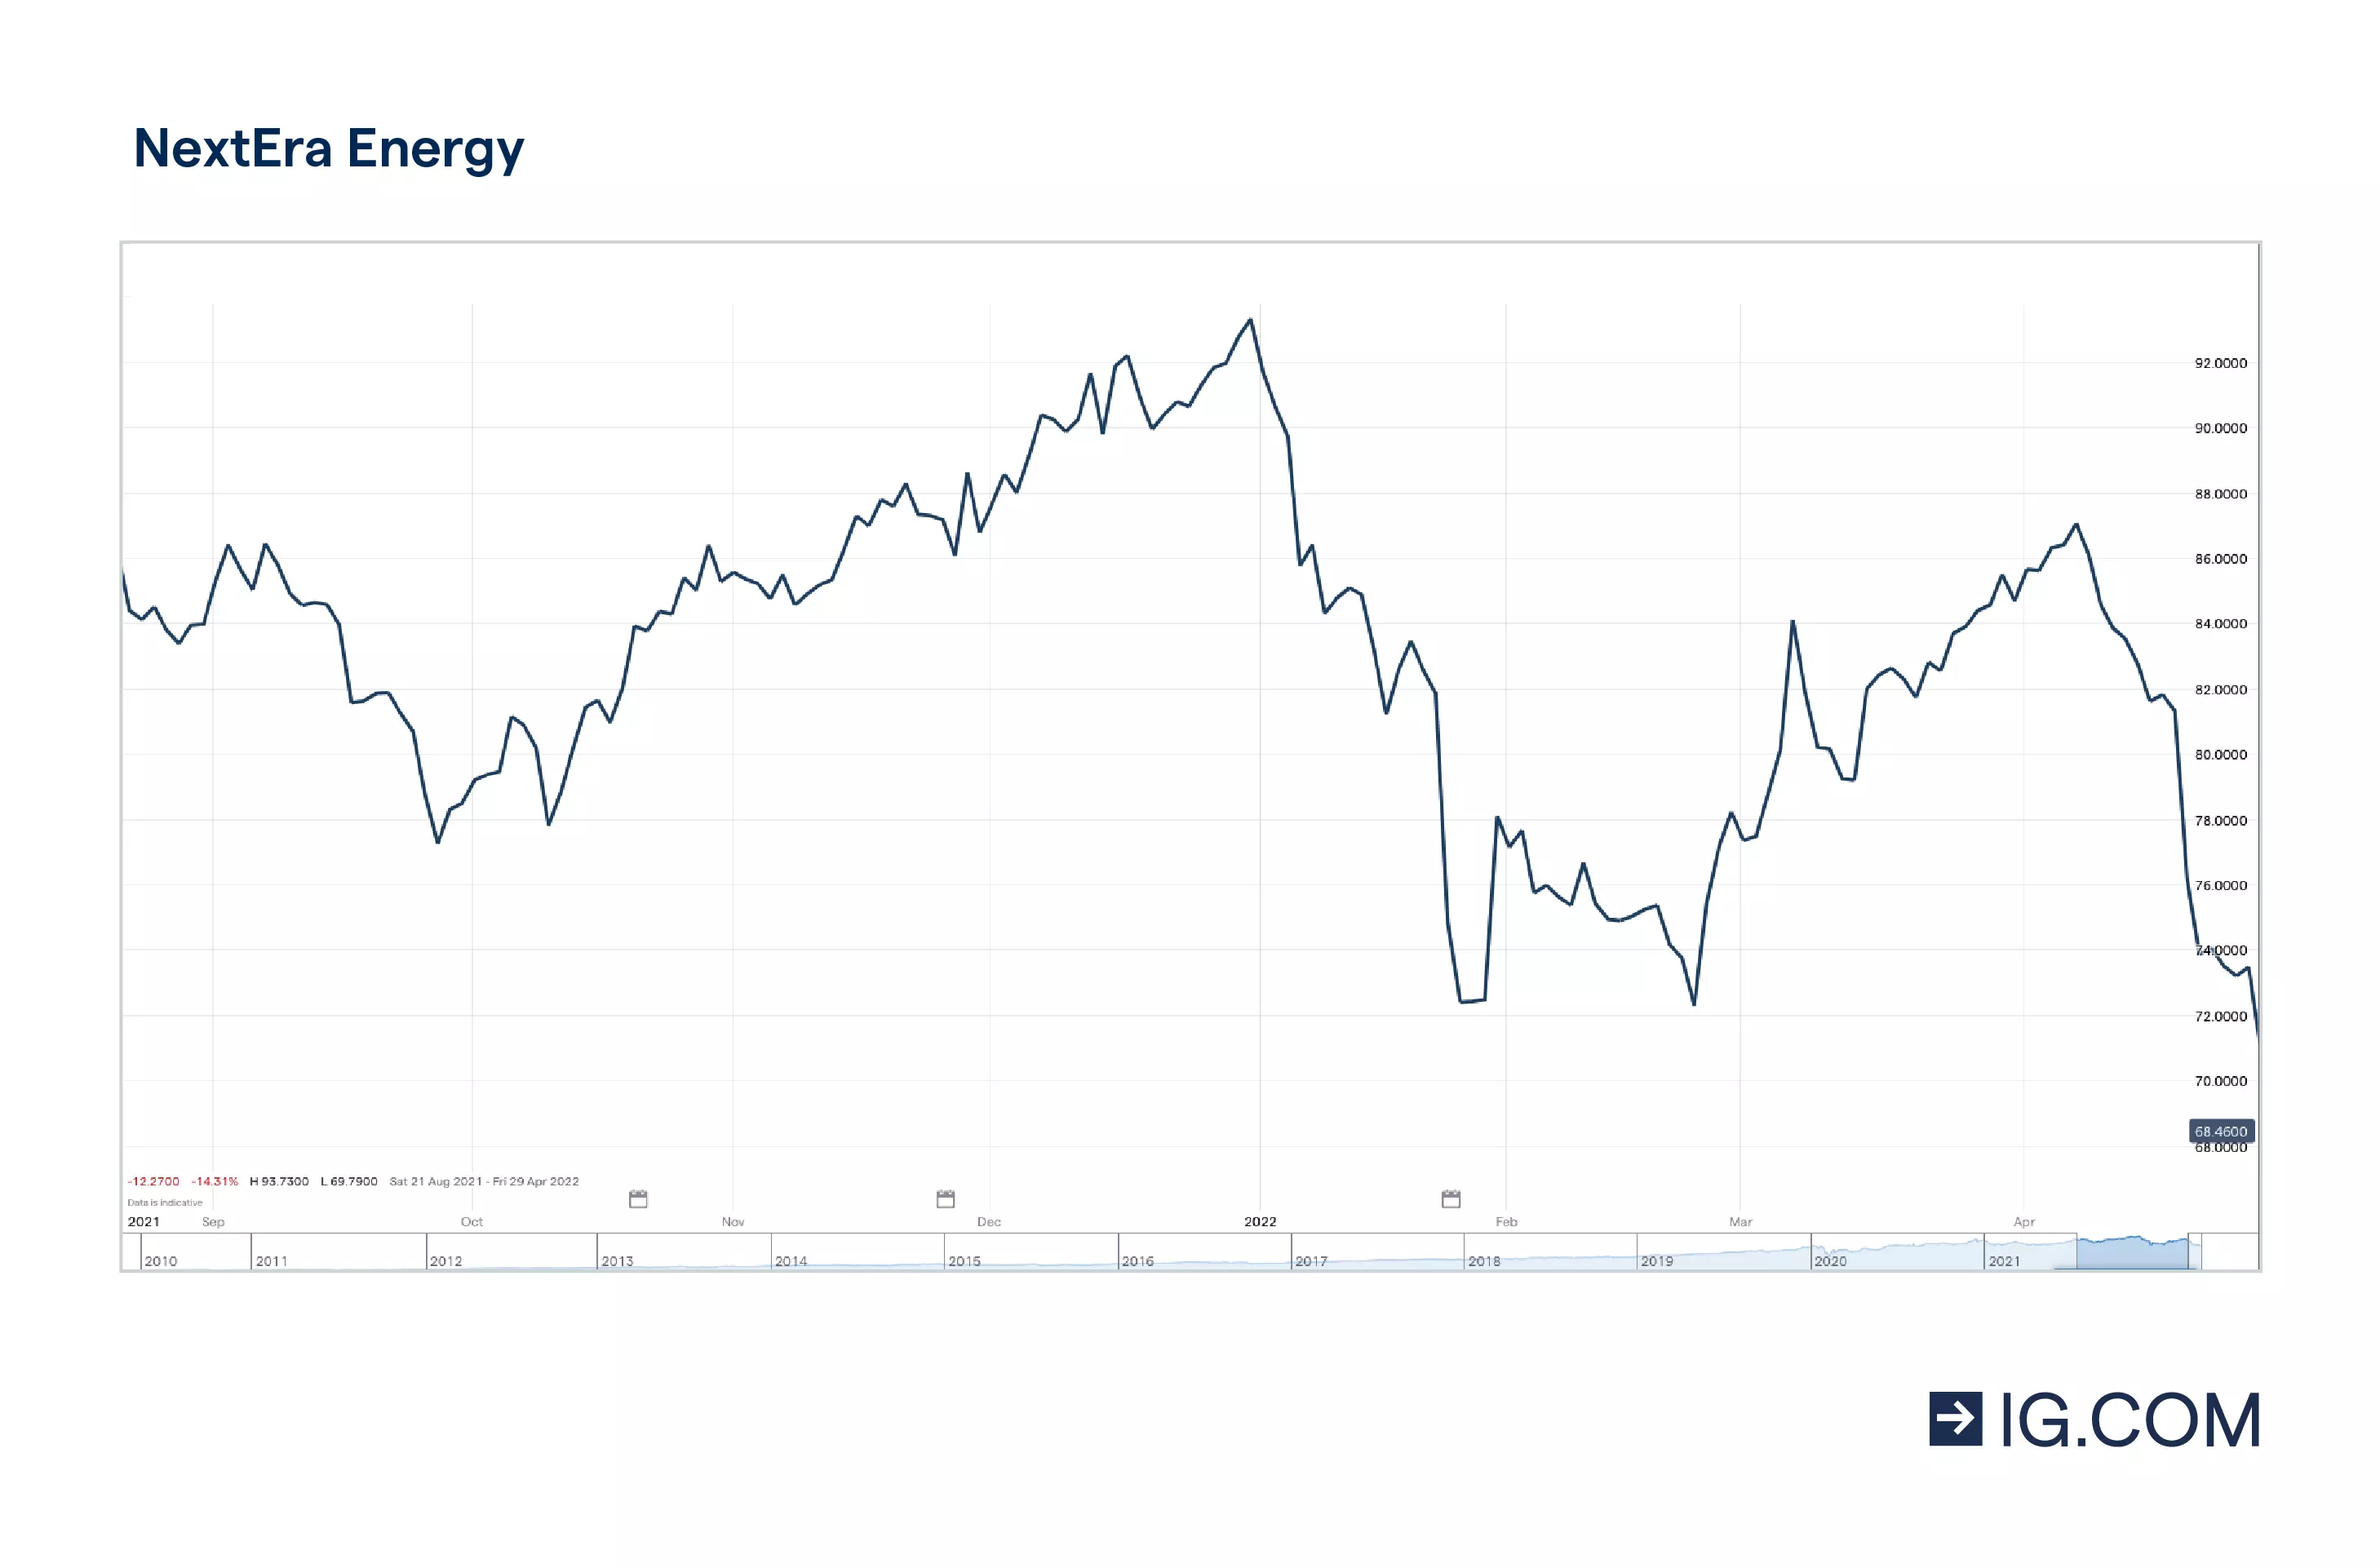 Las acciones de NextEra Energy a lo largo de un año, alcanzando diferentes niveles de precio, tocando techo en 93,73 en enero de 2022 y cayendo posteriormente, así como la cotización de la acción de 87,06 en abril de 2022.